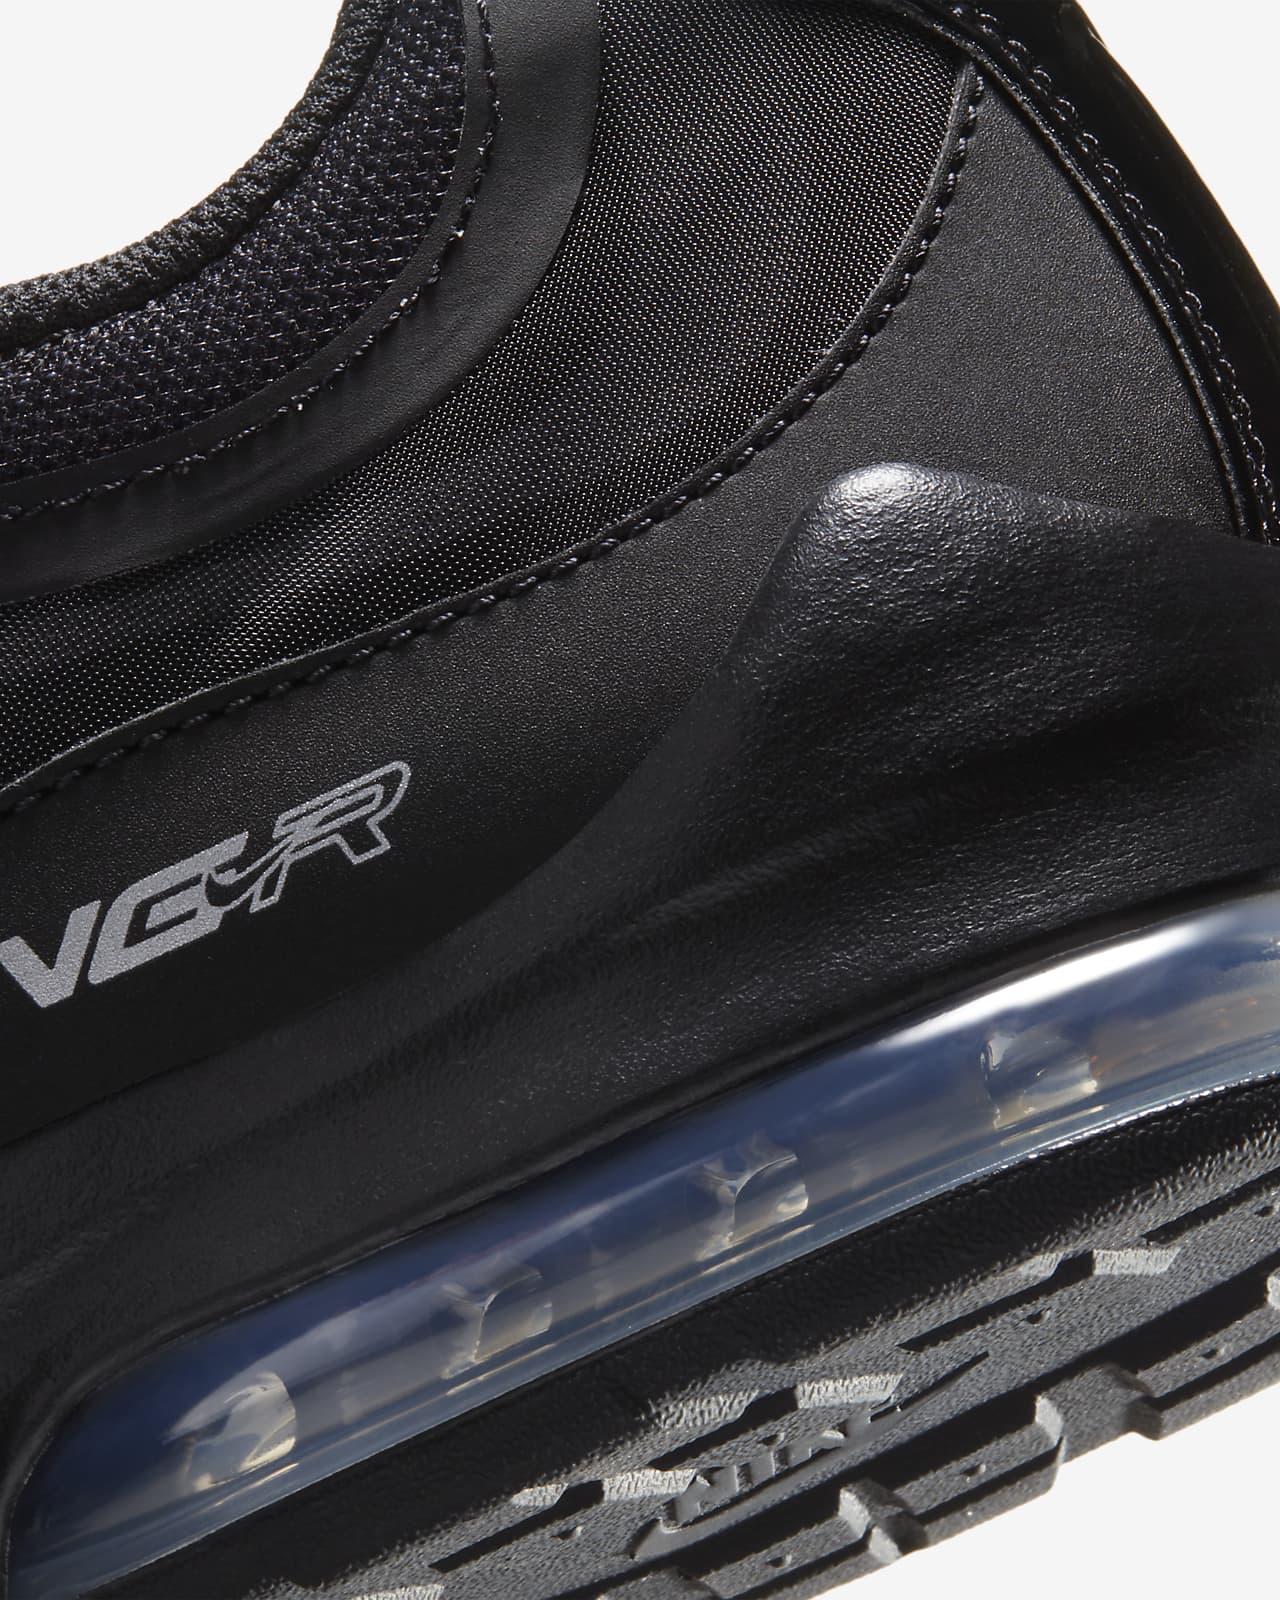 Chaussure Nike Air Max VG-R pour Homme